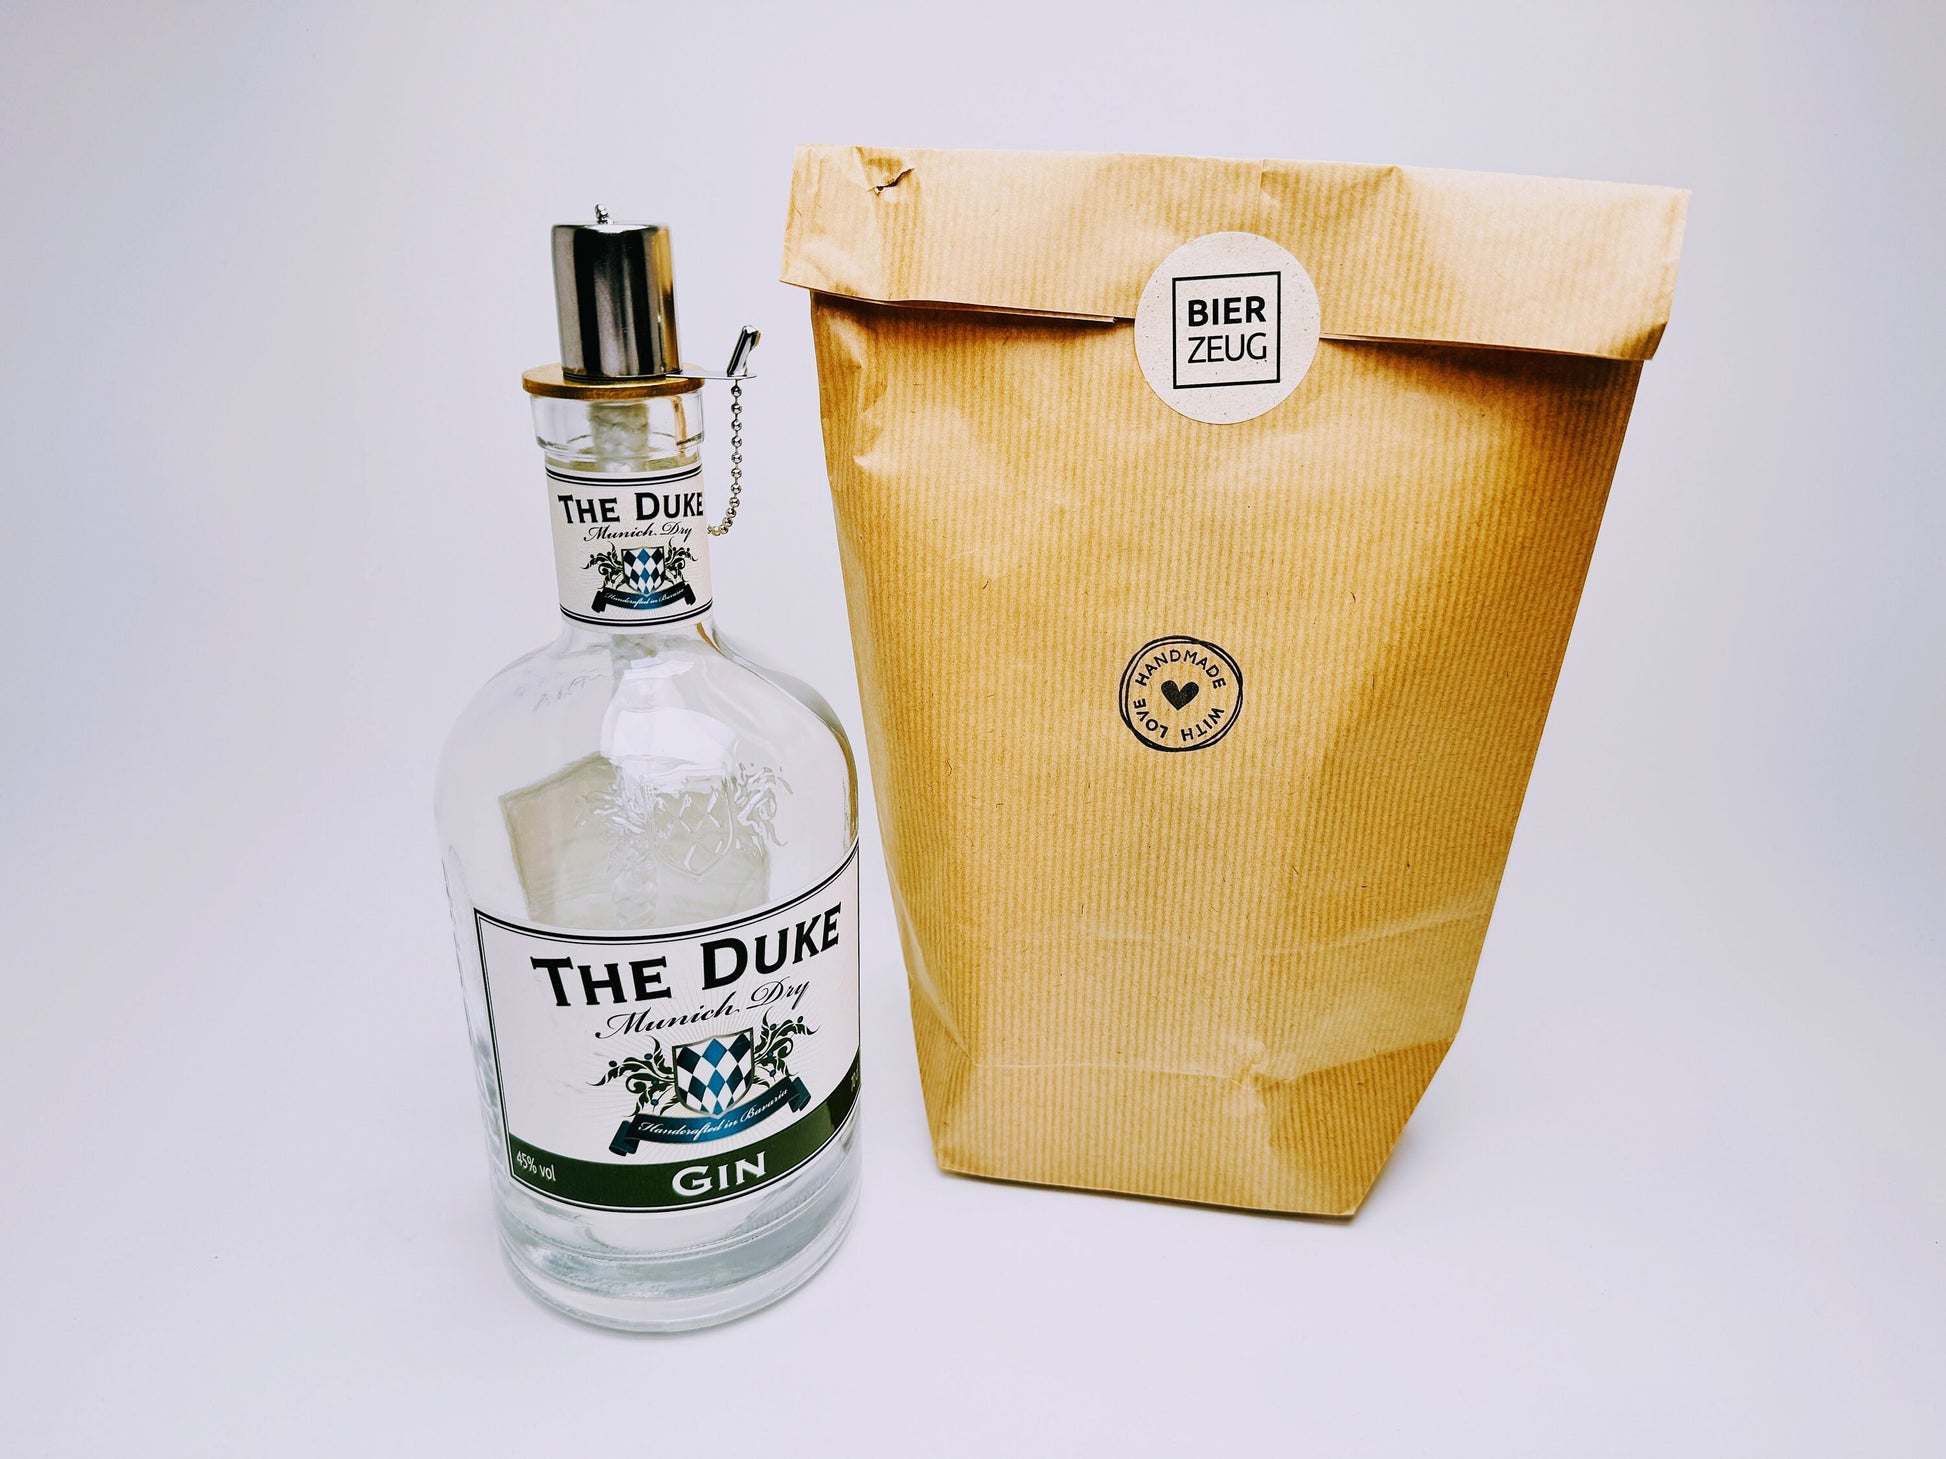 Gin Öllampe "The Duke" | Handgemachte Öllampe aus The Duke Gin Flaschen | Upcycling | Handgemacht | Individuell | Geschenk | Deko | H:25cm